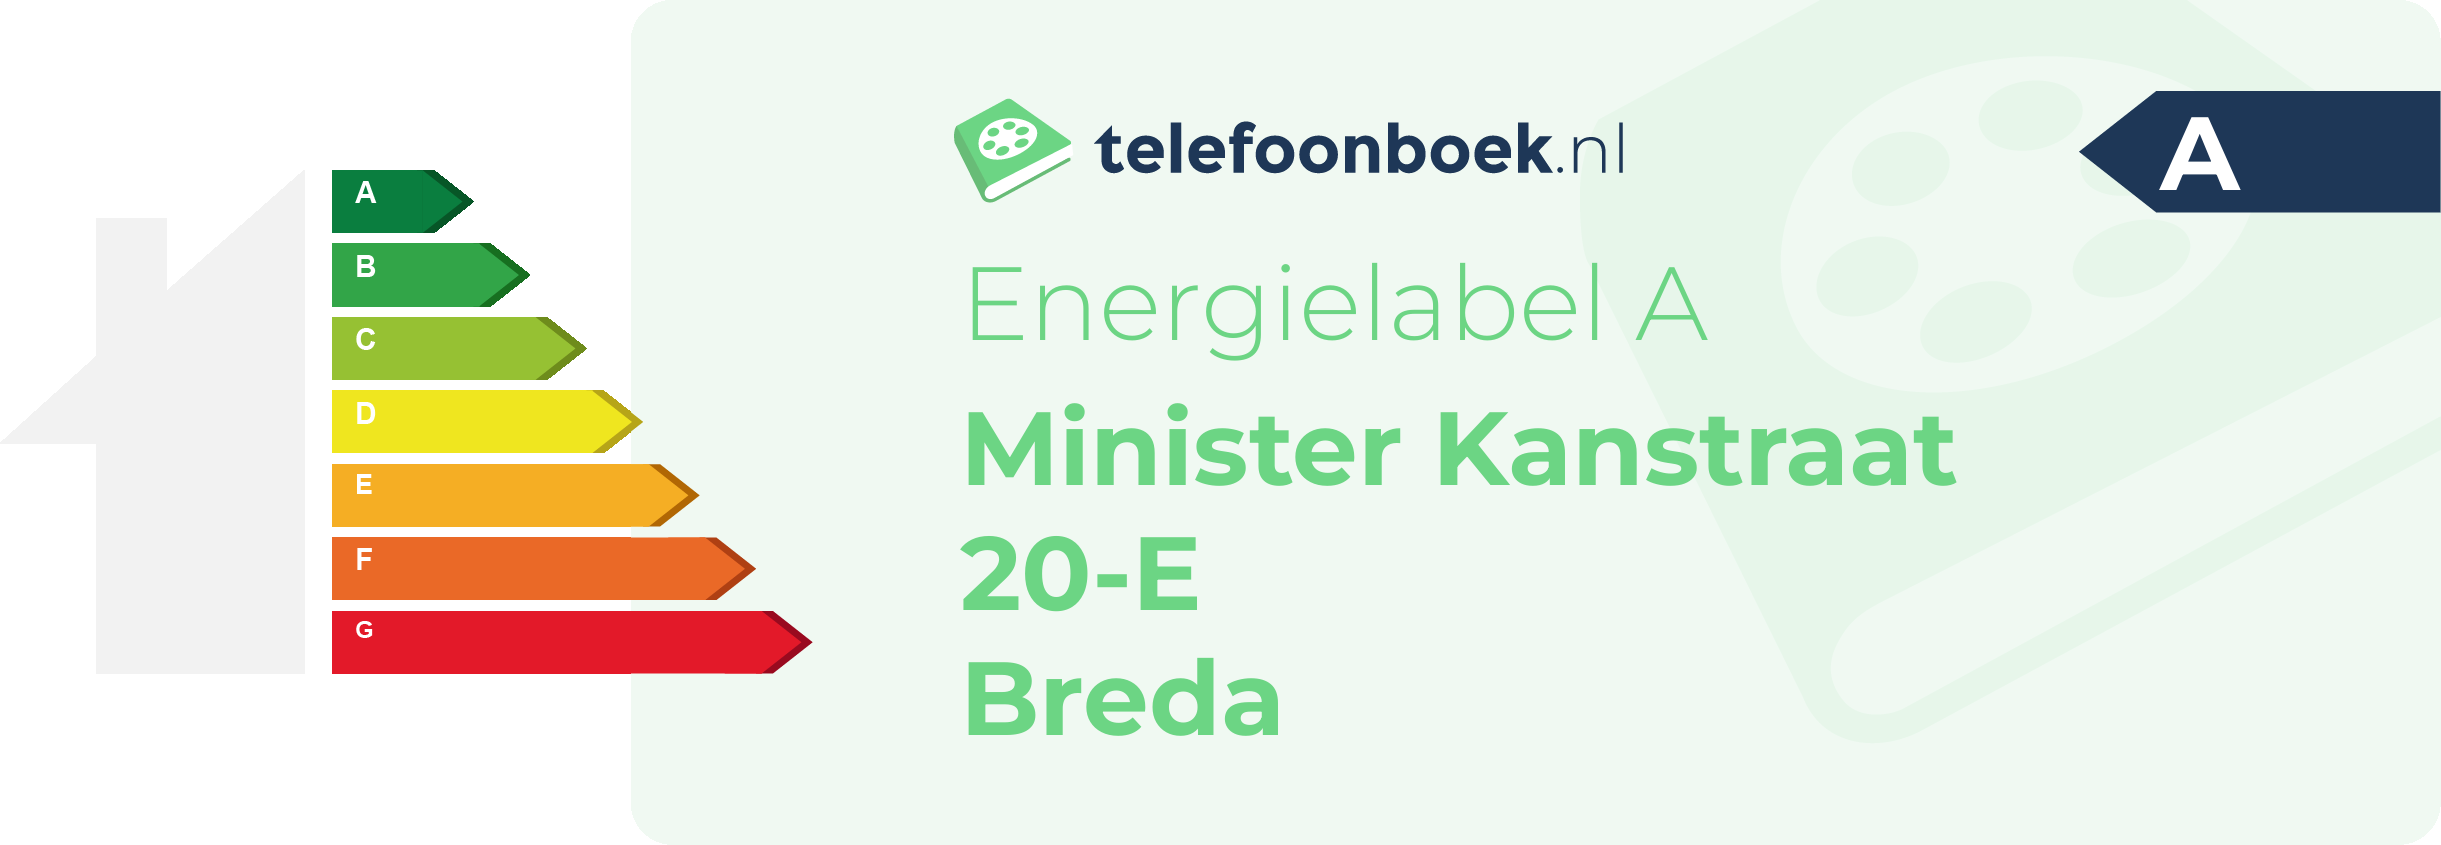 Energielabel Minister Kanstraat 20-E Breda